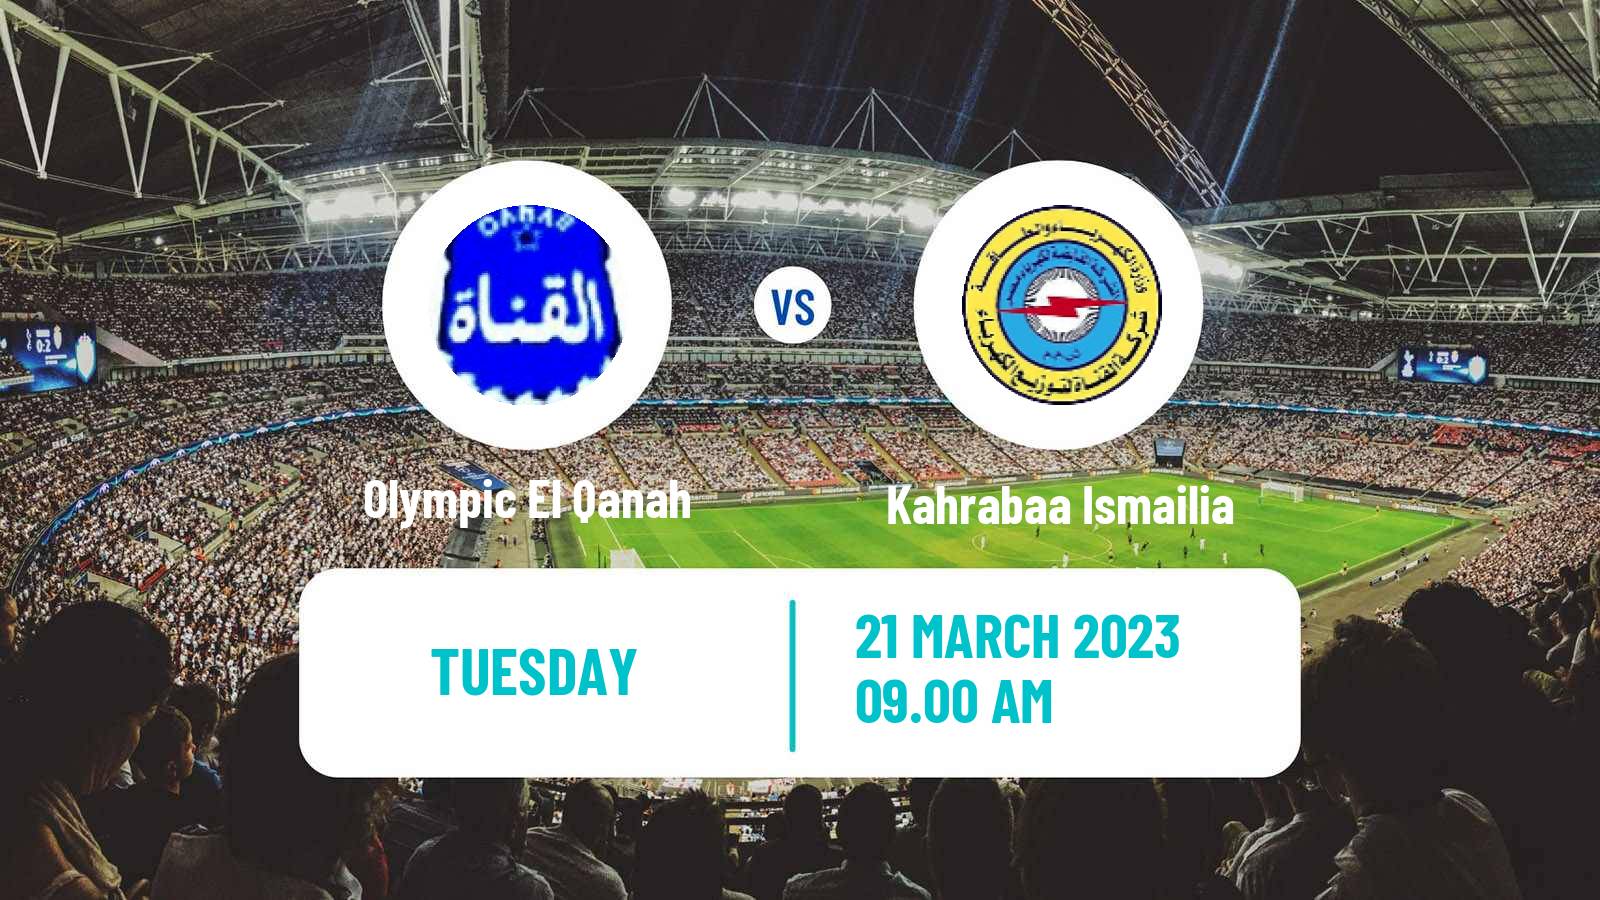 Soccer Egyptian Division 2 - Group B Olympic El Qanah - Kahrabaa Ismailia